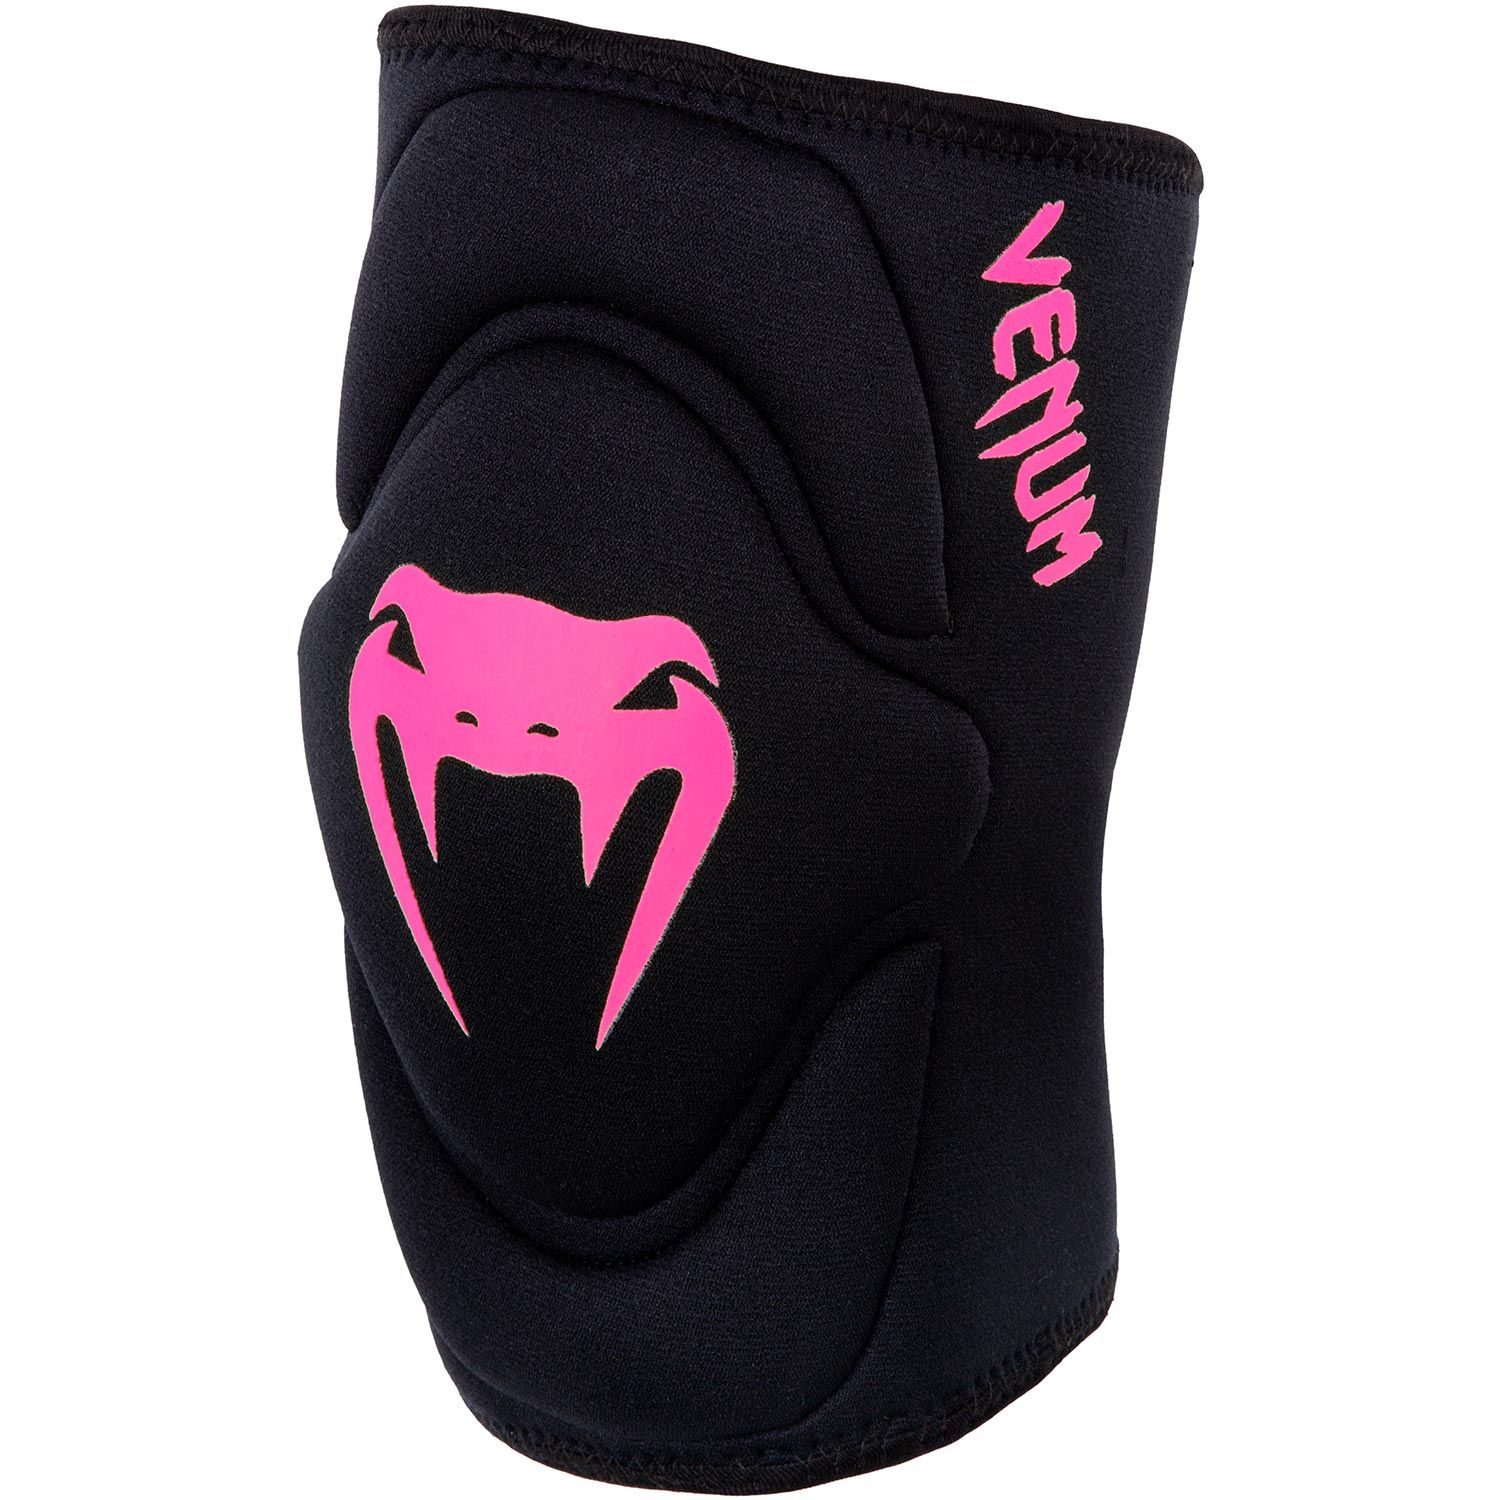 Venum Kontact Gel Knee Pad - Black/Neo Pink